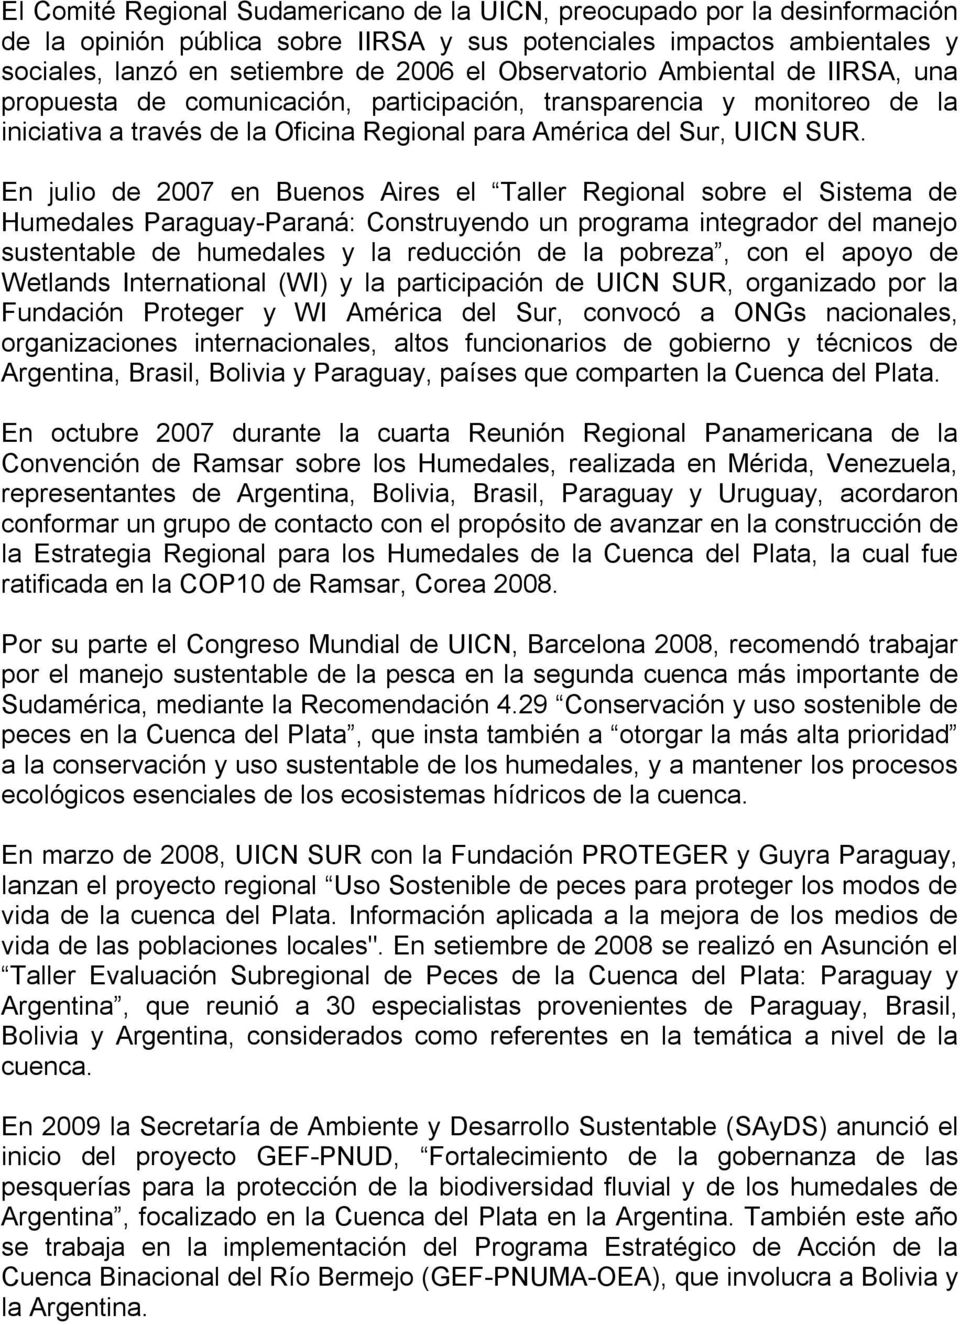 En julio de 2007 en Buenos Aires el Taller Regional sobre el Sistema de Humedales Paraguay Paraná: Construyendo un programa integrador del manejo sustentable de humedales y la reducción de la